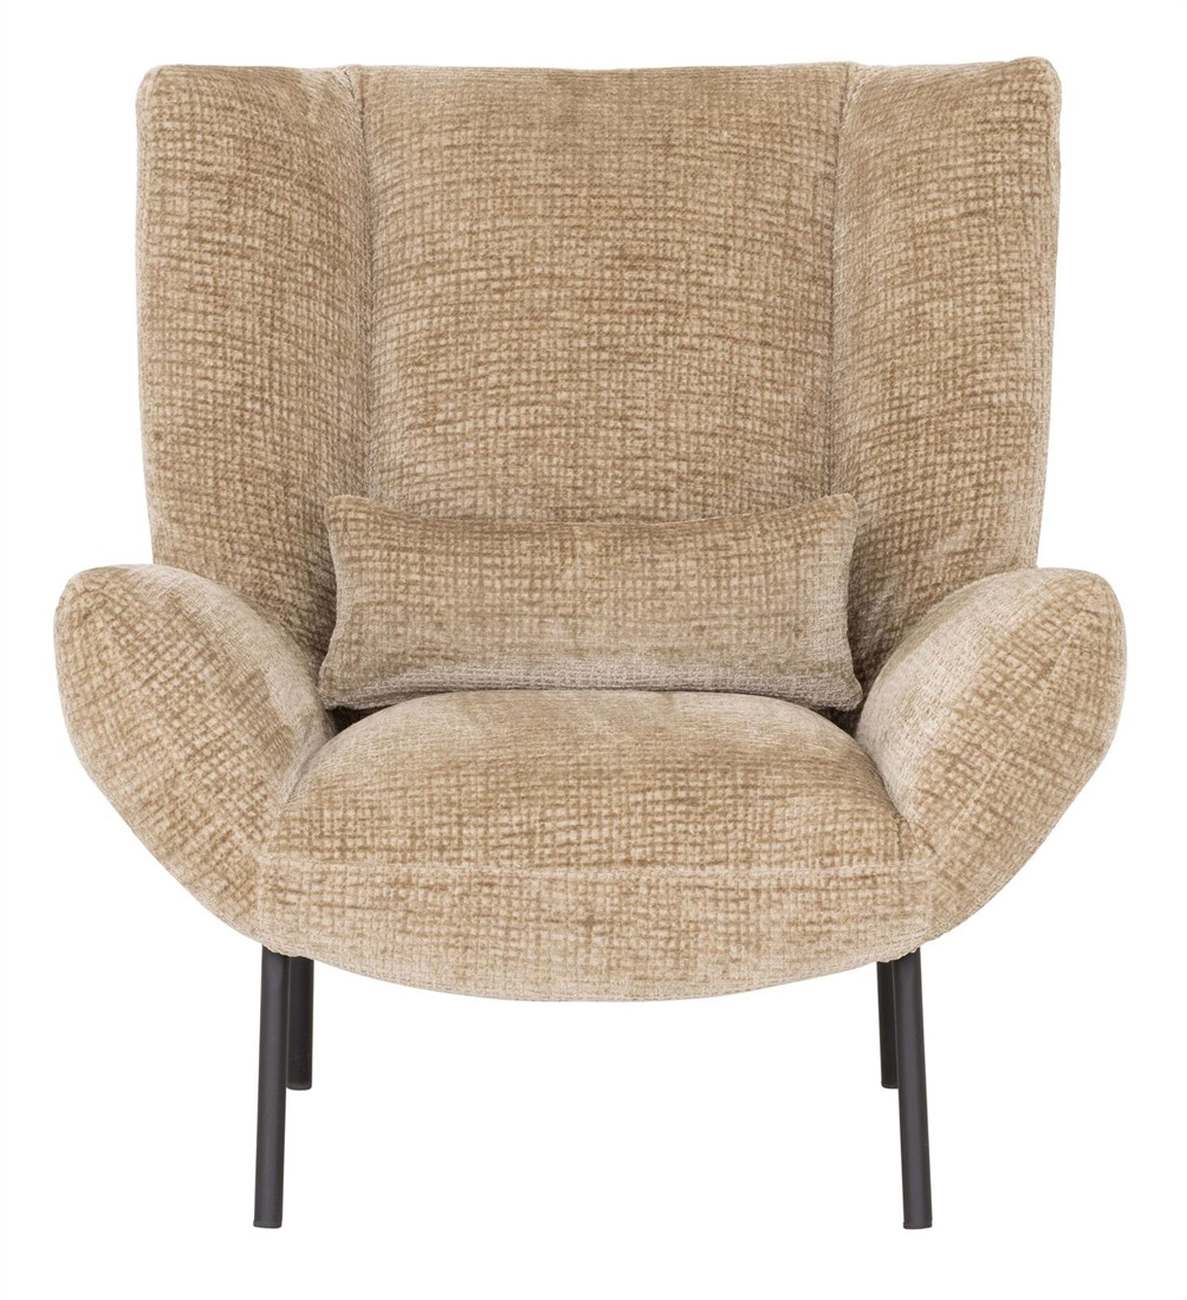 Der Sessel Astro überzeugt mit seinem modernen Design. Gefertigt wurde er aus Stoff, welcher einen Sand Farbton besitzt. Das Gestell ist aus Metall und hat eine schwarze Farbe. Der Sessel besitzt eine Größe von 97x92x96 cm.